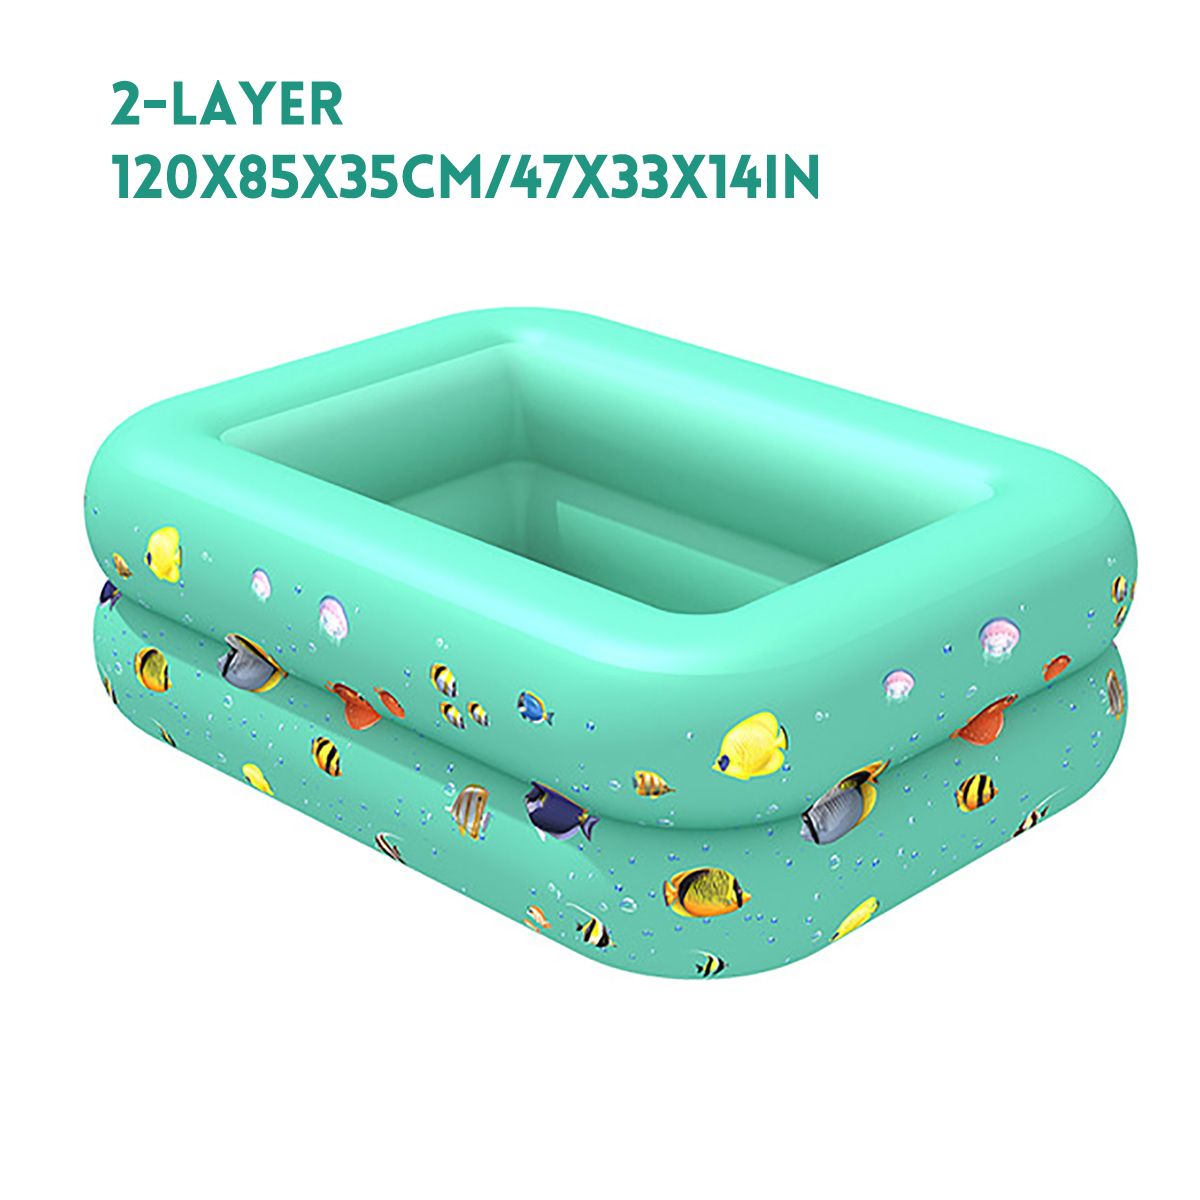 Baby-Inflatable-Bathtubs-Newborn-Bath-Tub-Portable-Folding-Shower-Tub-Kids-bath-Child-Infant-Wash-Sw-1713921